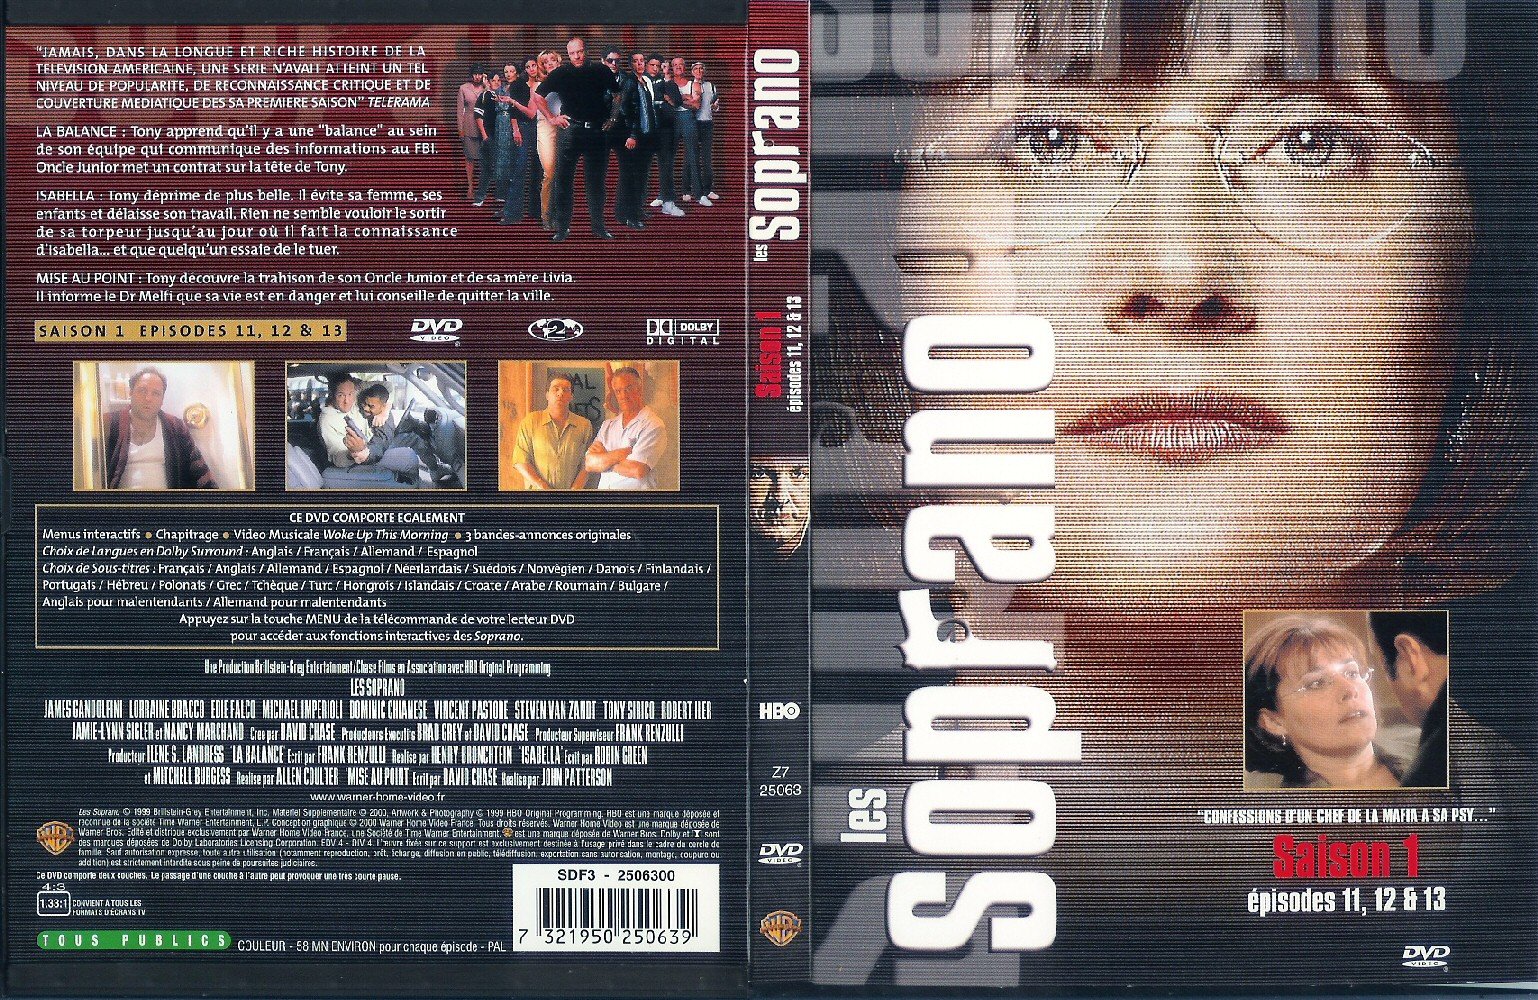 Jaquette DVD Les Soprano Saison 1 vol 6